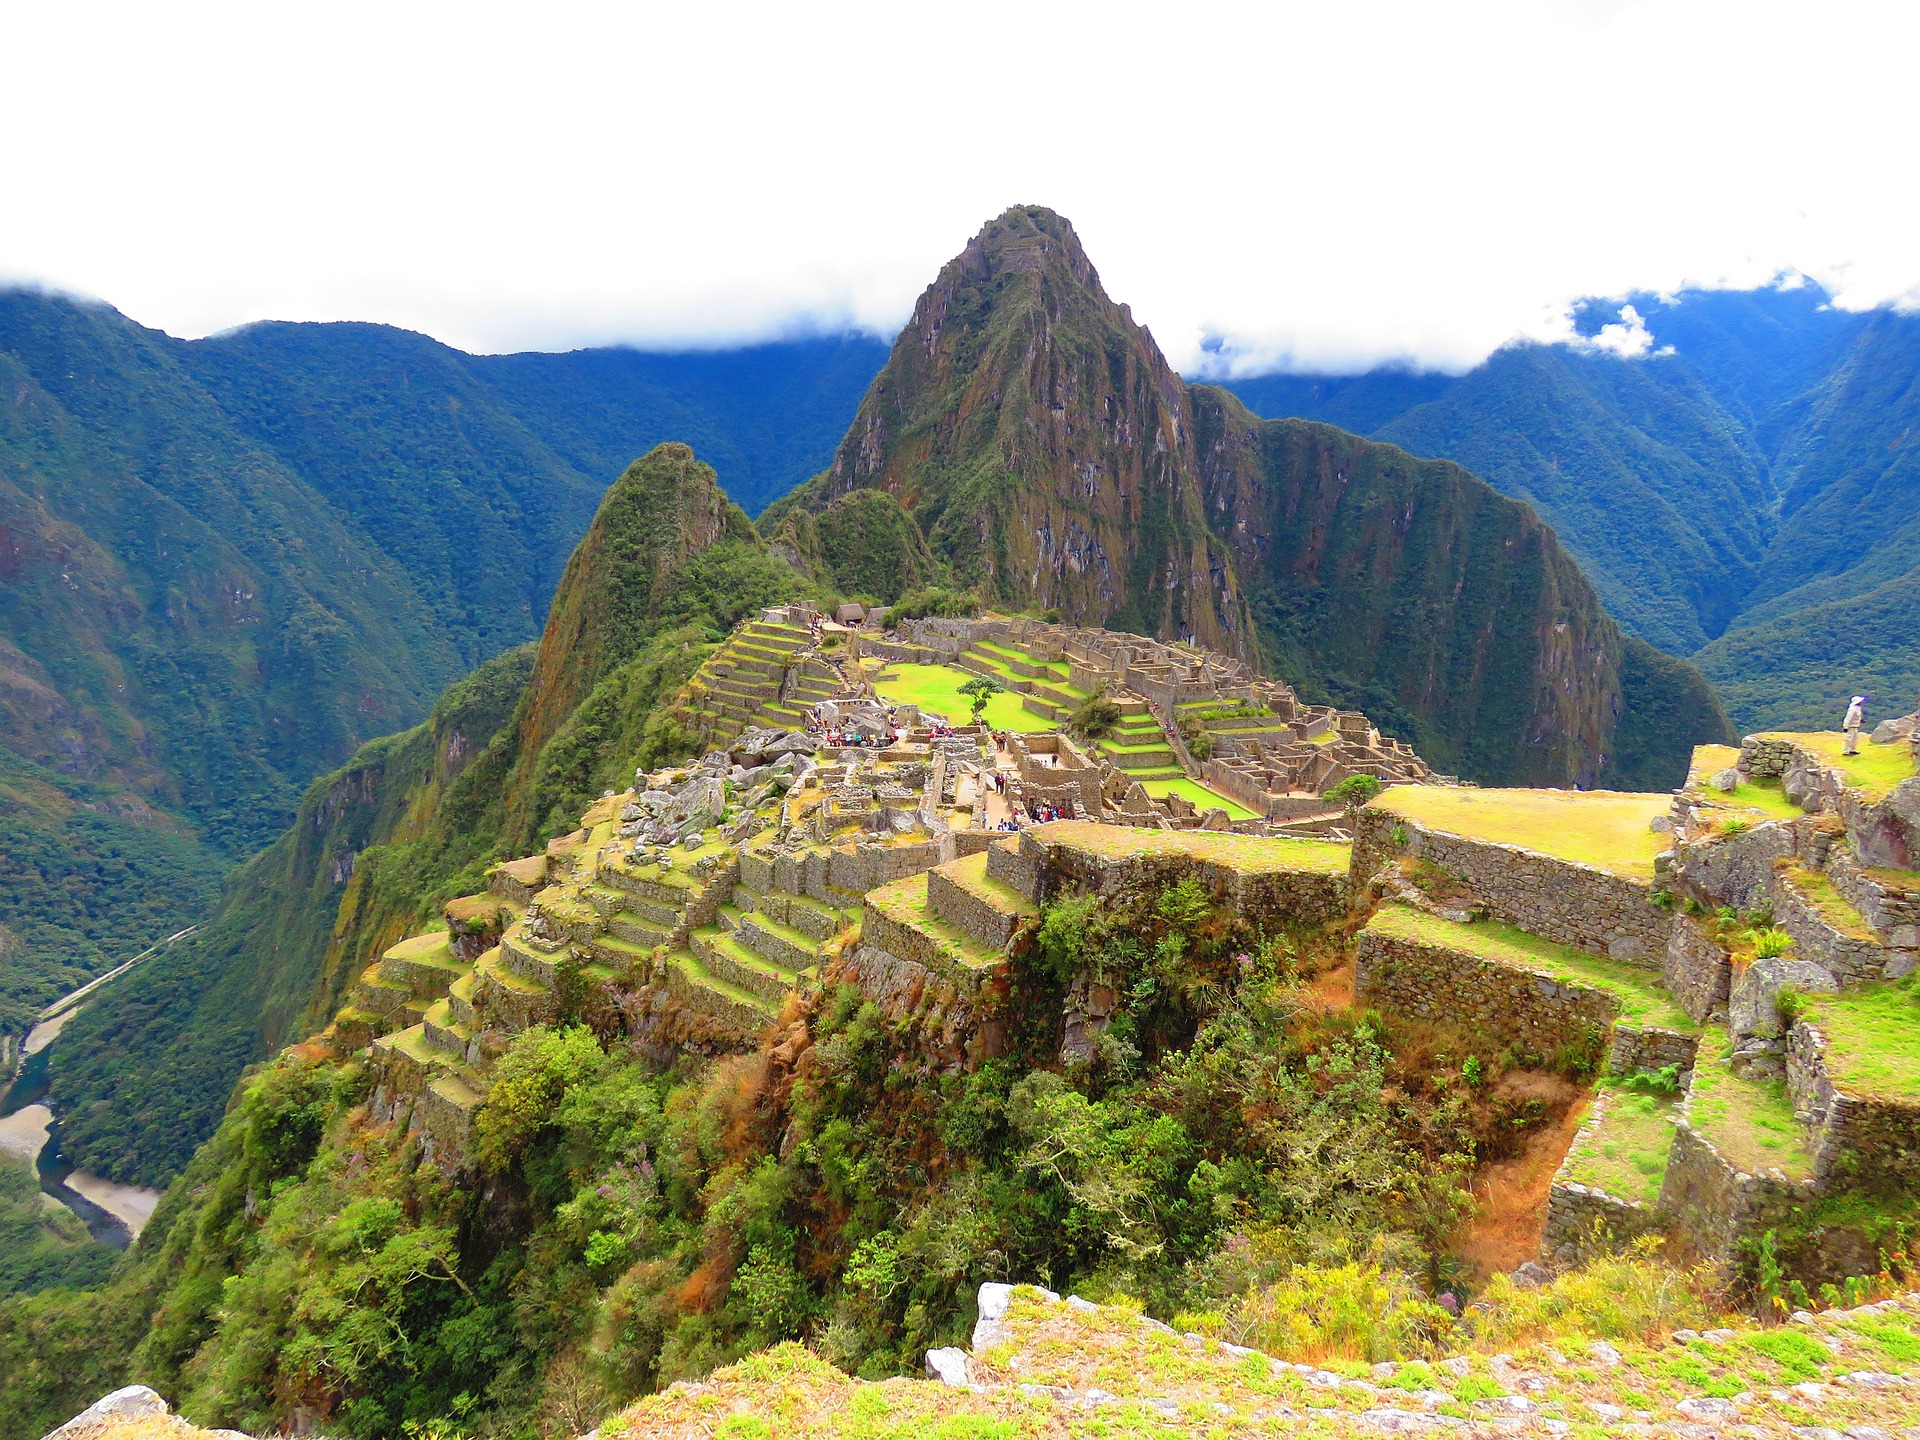 Best off peak season travel tips in Peru by OffPeakSeason.com